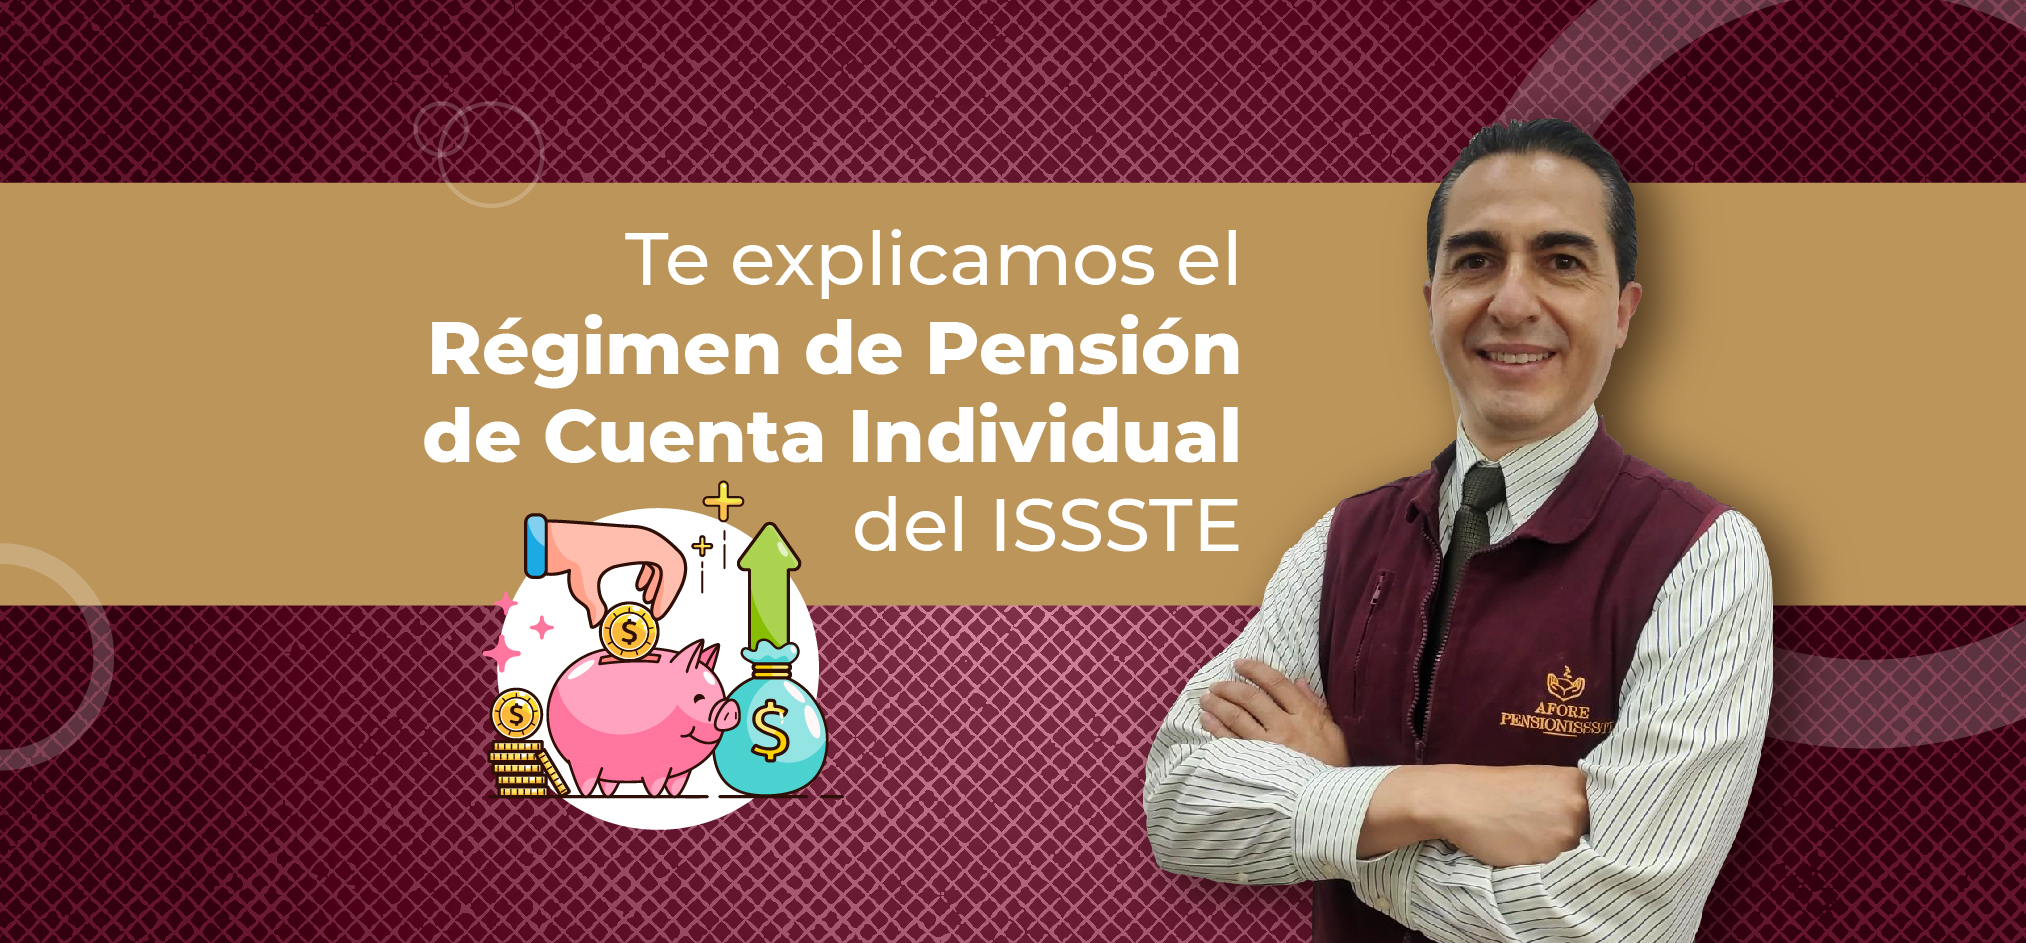 Te explicamos el Régimen de Pensión de Cuenta Individual del ISSSTE